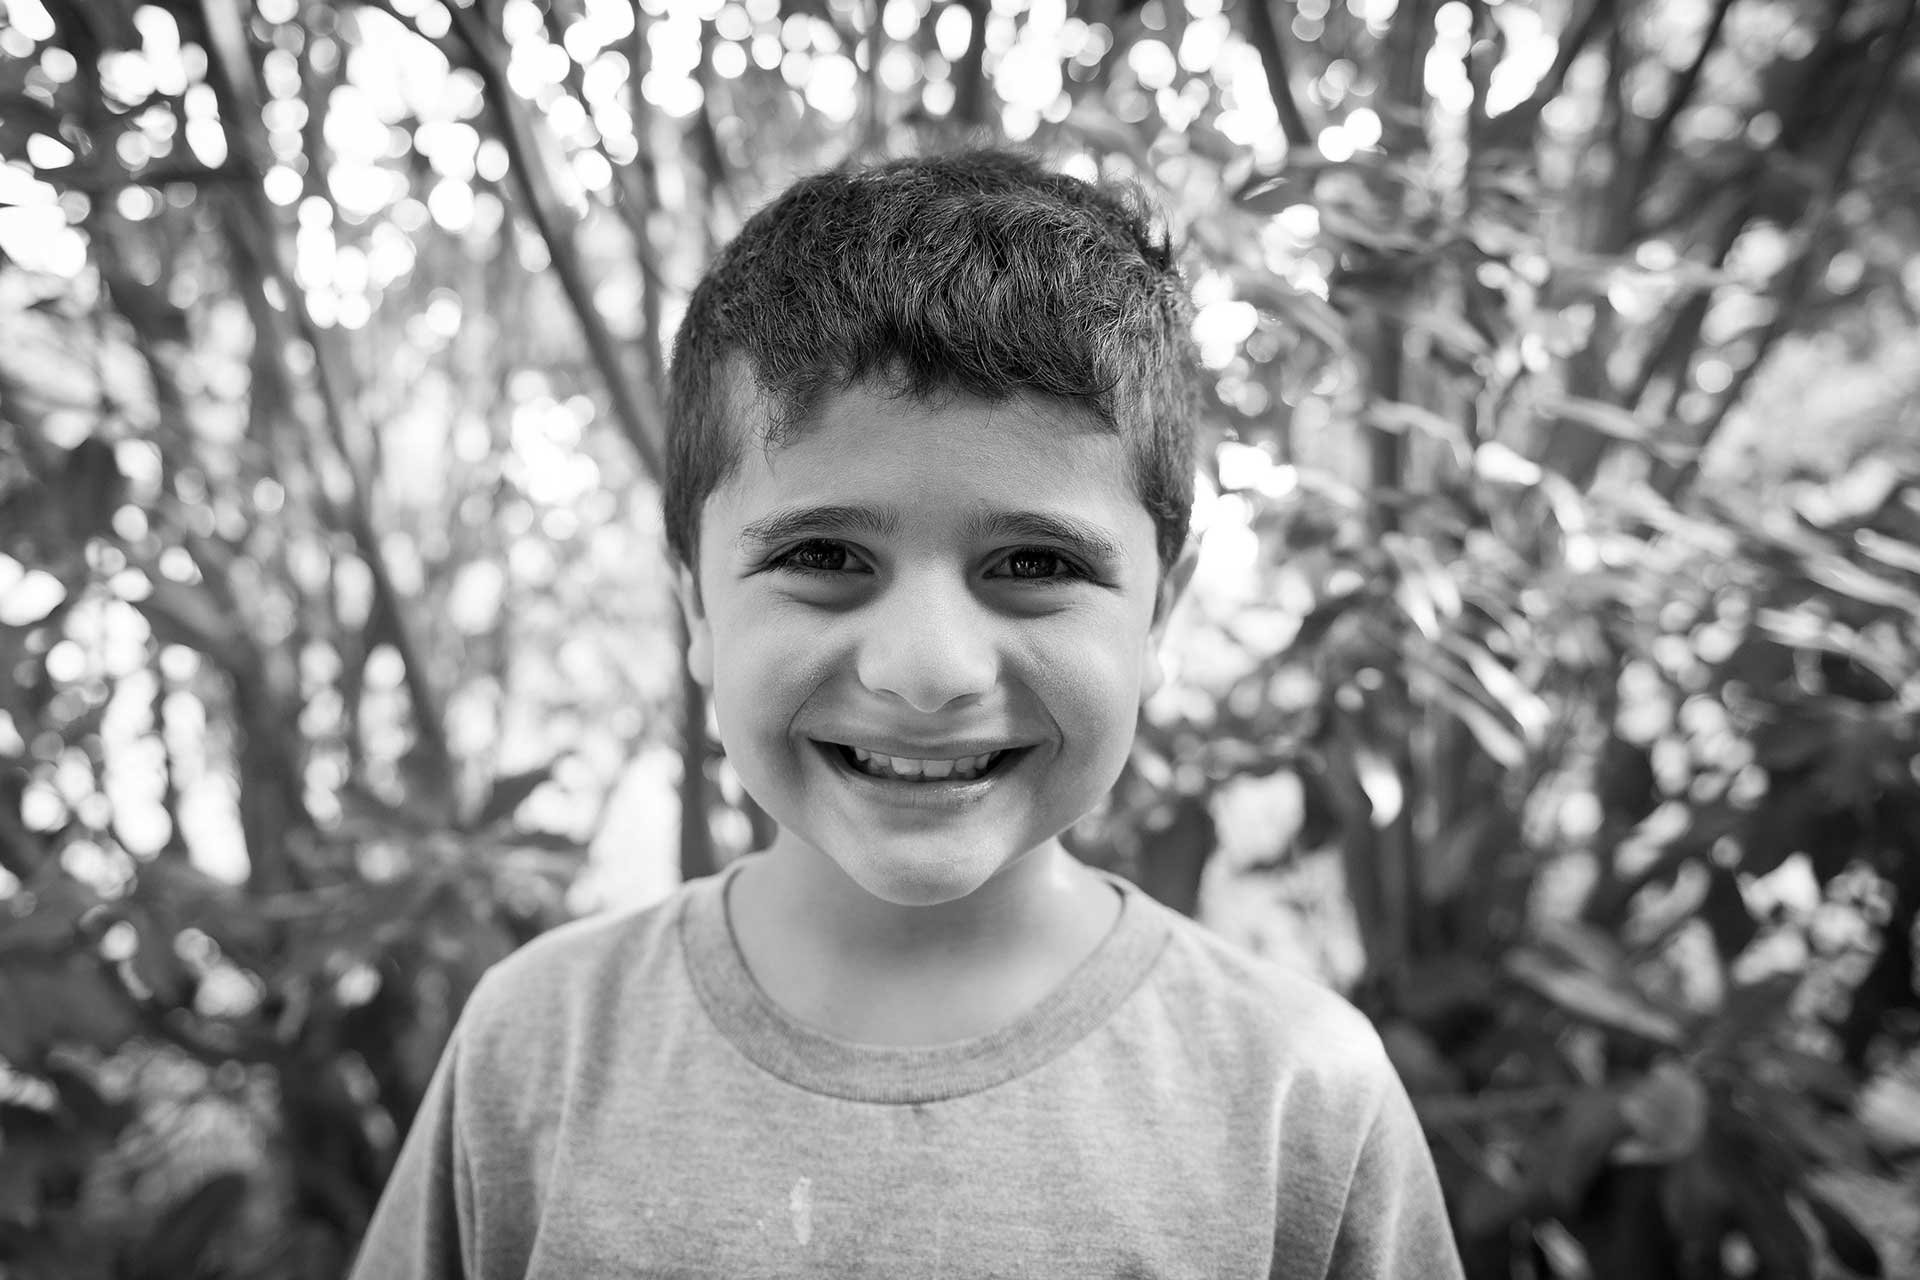 Retrato fotográfico, en blanco y negro, de un niño